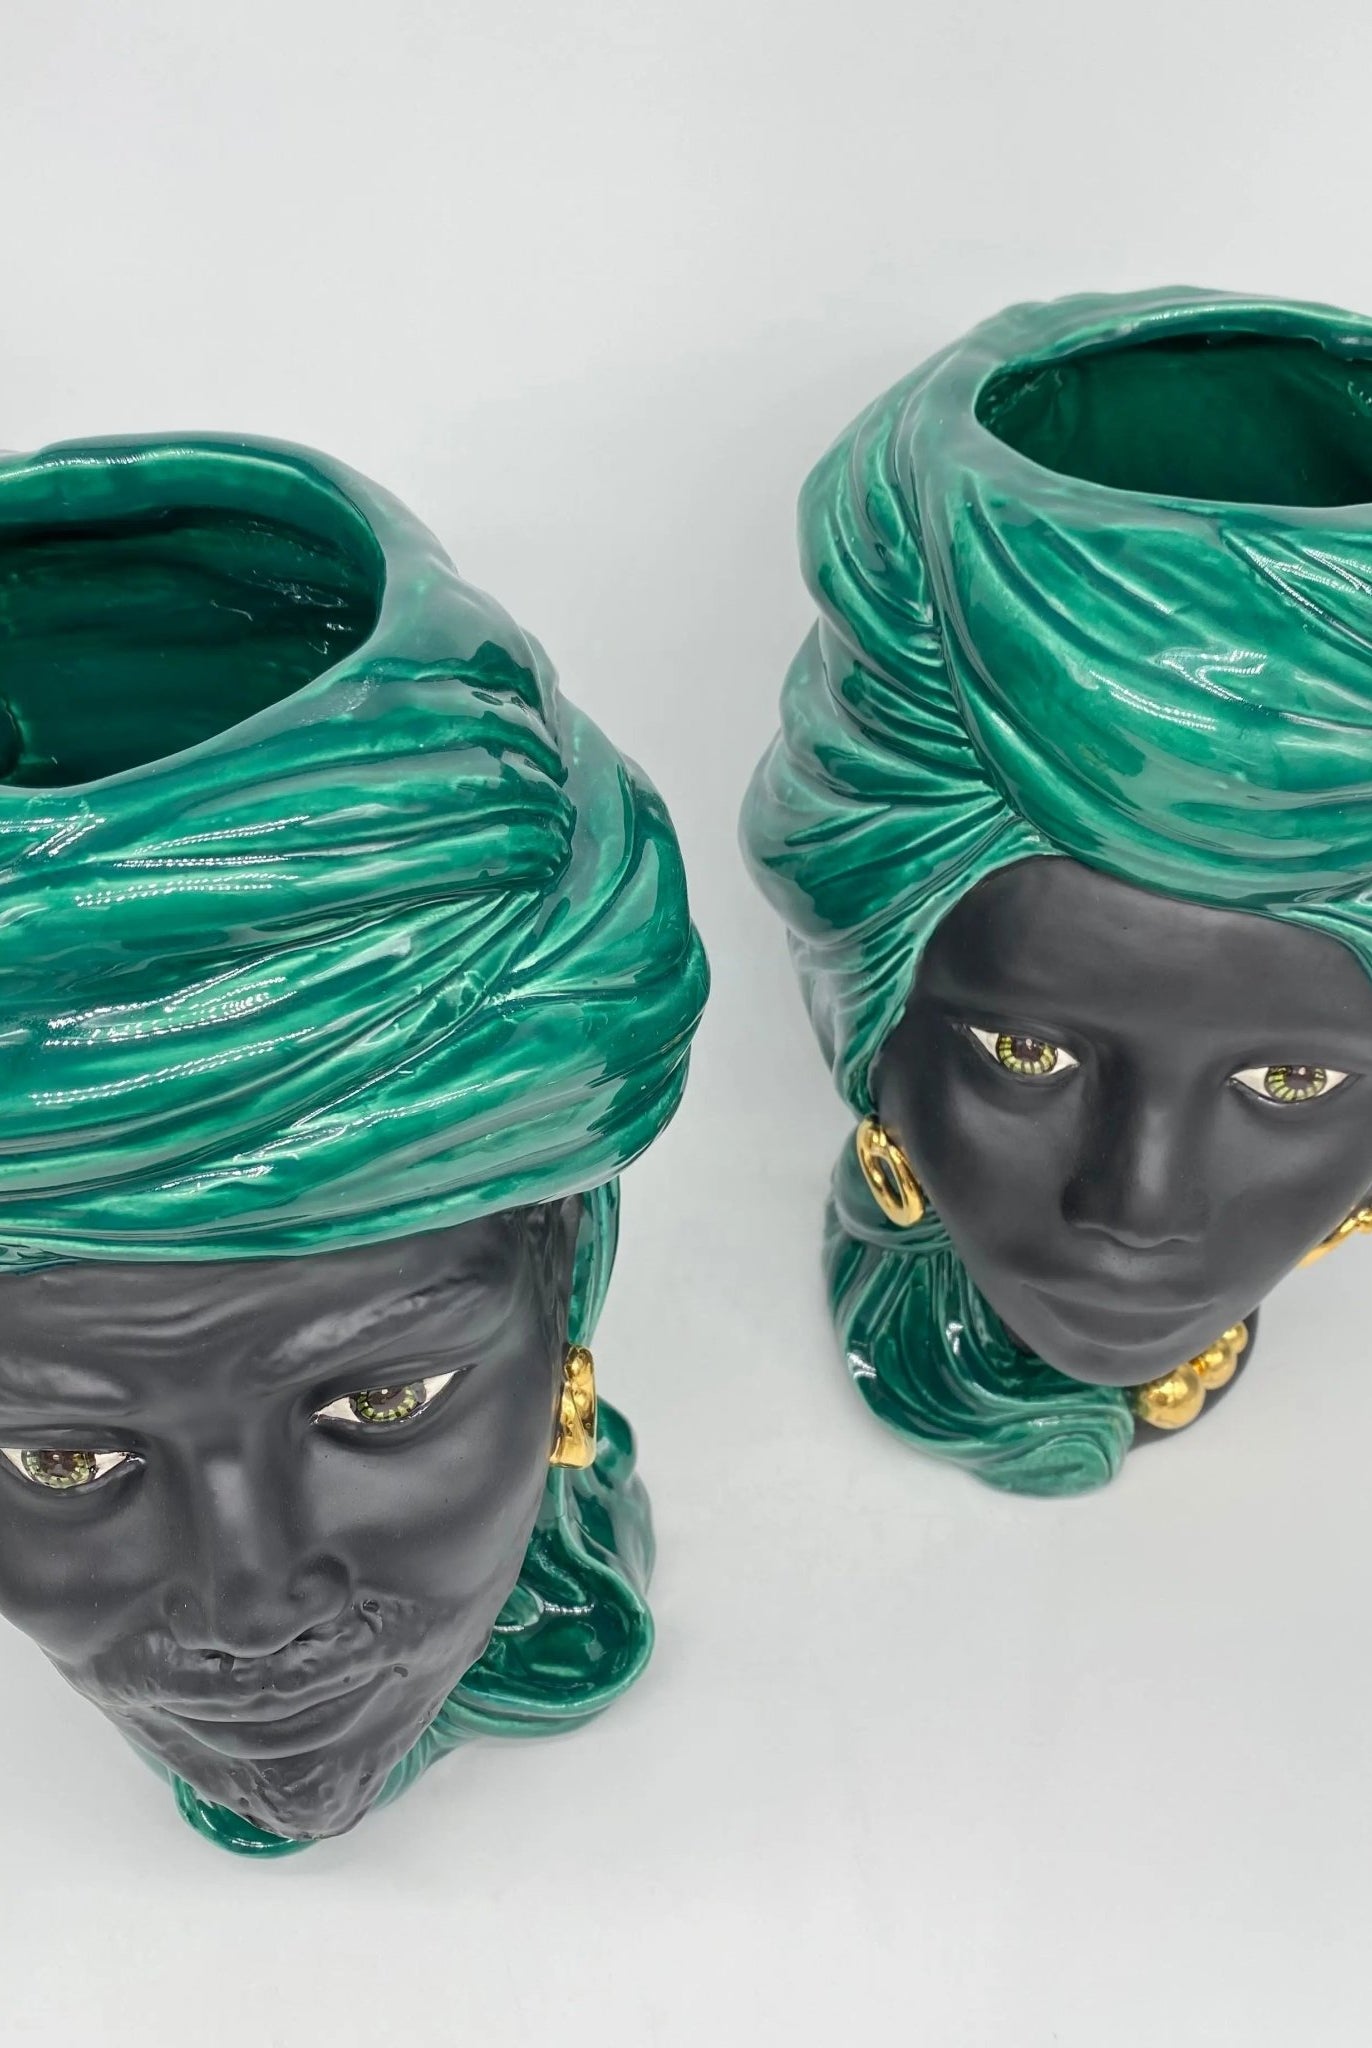 Teste di Moro Anubi Ceramica Caltagirone cm H.29 L.20 Artigianale Verde Nero Oro - DD CERAMICHE SICILIANE